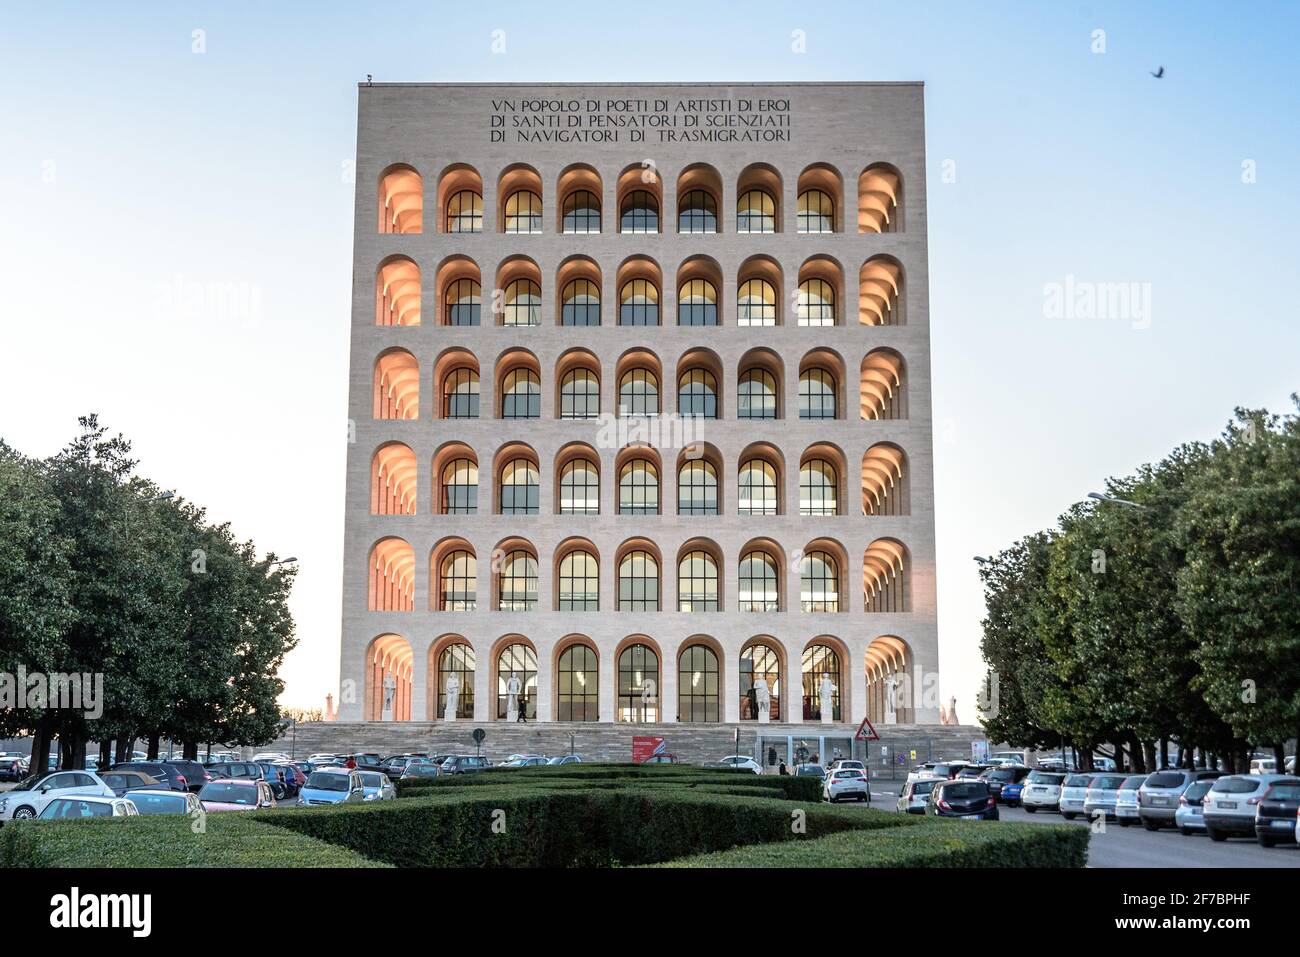 Palazzo della Civilta Italiana palace or square Colosseum at dusk, EUR, Rome, Lazio, Italy, Europe Stock Photo